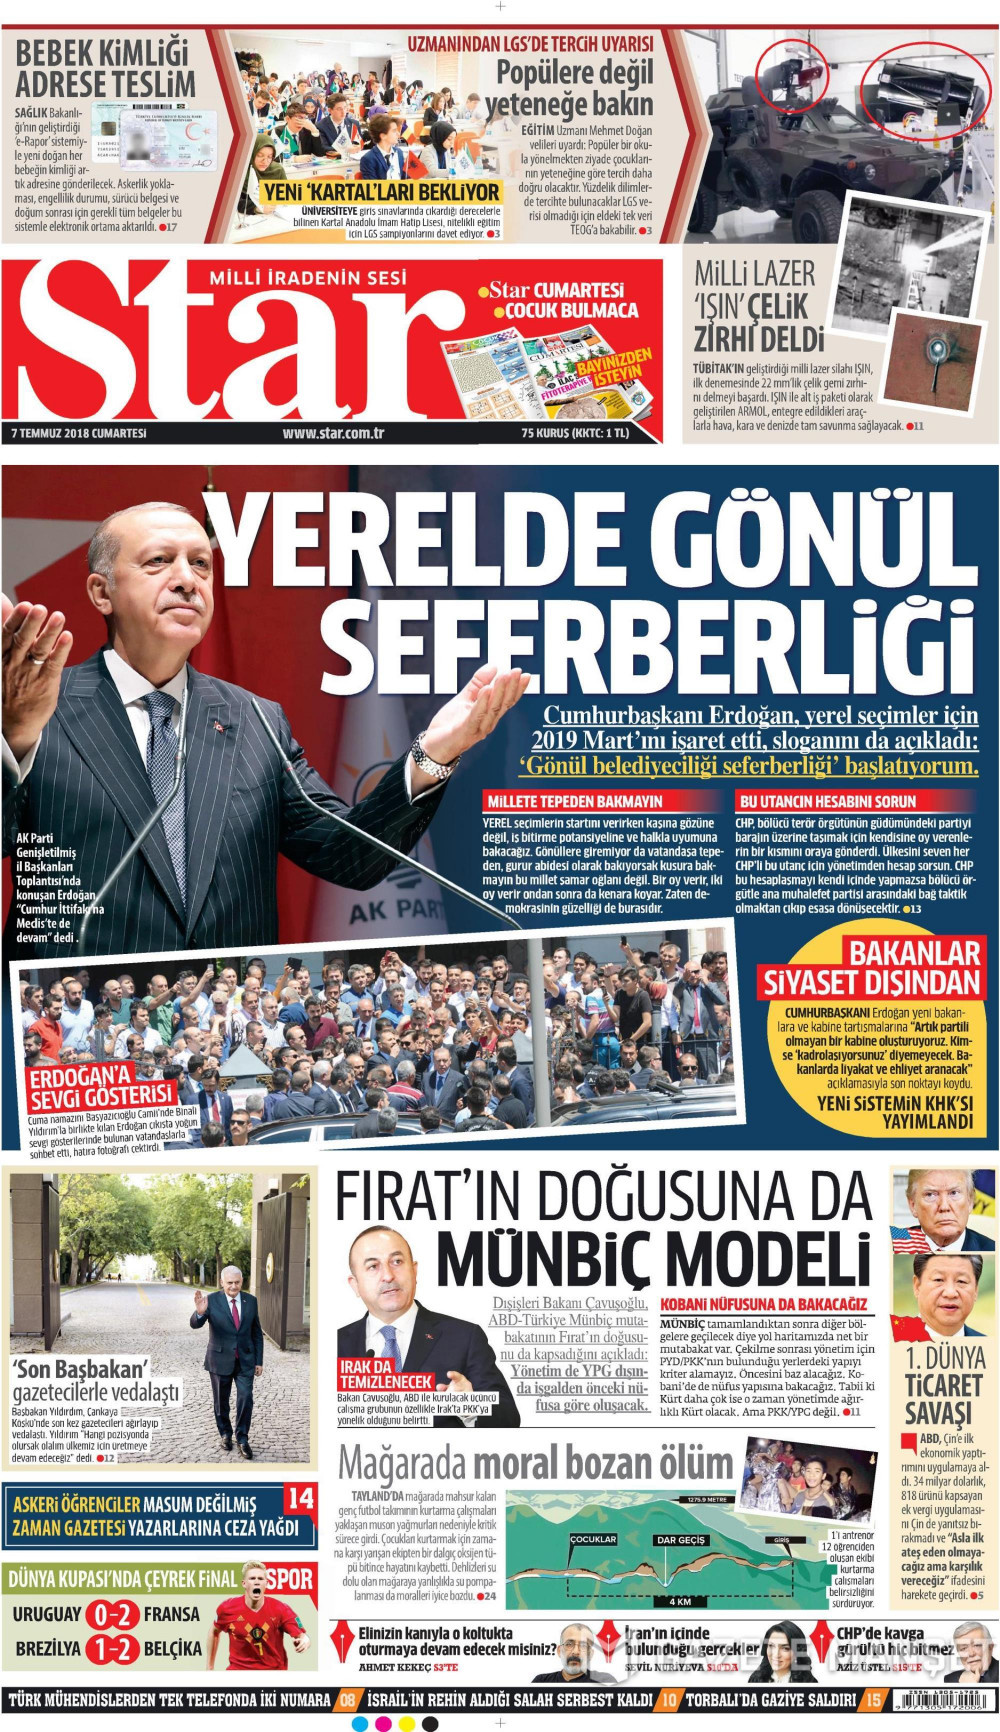 Gazete manşetleri 7 Temmuz 2018 Hürriyet - Sözcü - Posta